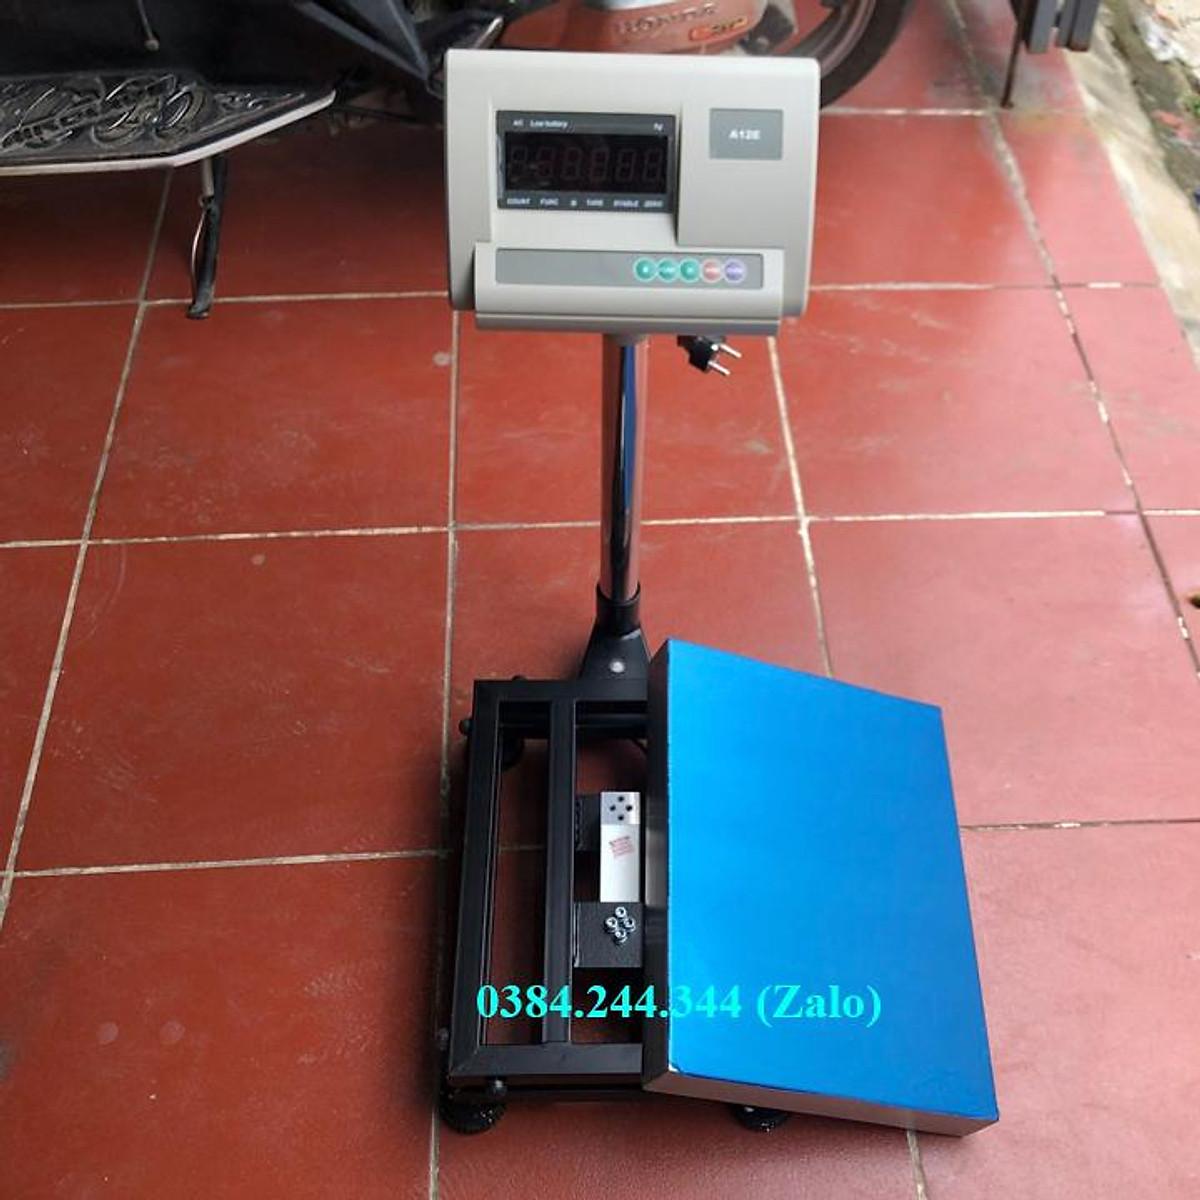 Cân bàn điện tử thông dụng Yaohua A12E, Mức cân 100kg, độ chia 0.02kg, Bàn cân kích thước 30x40cm (rộng x sâu)